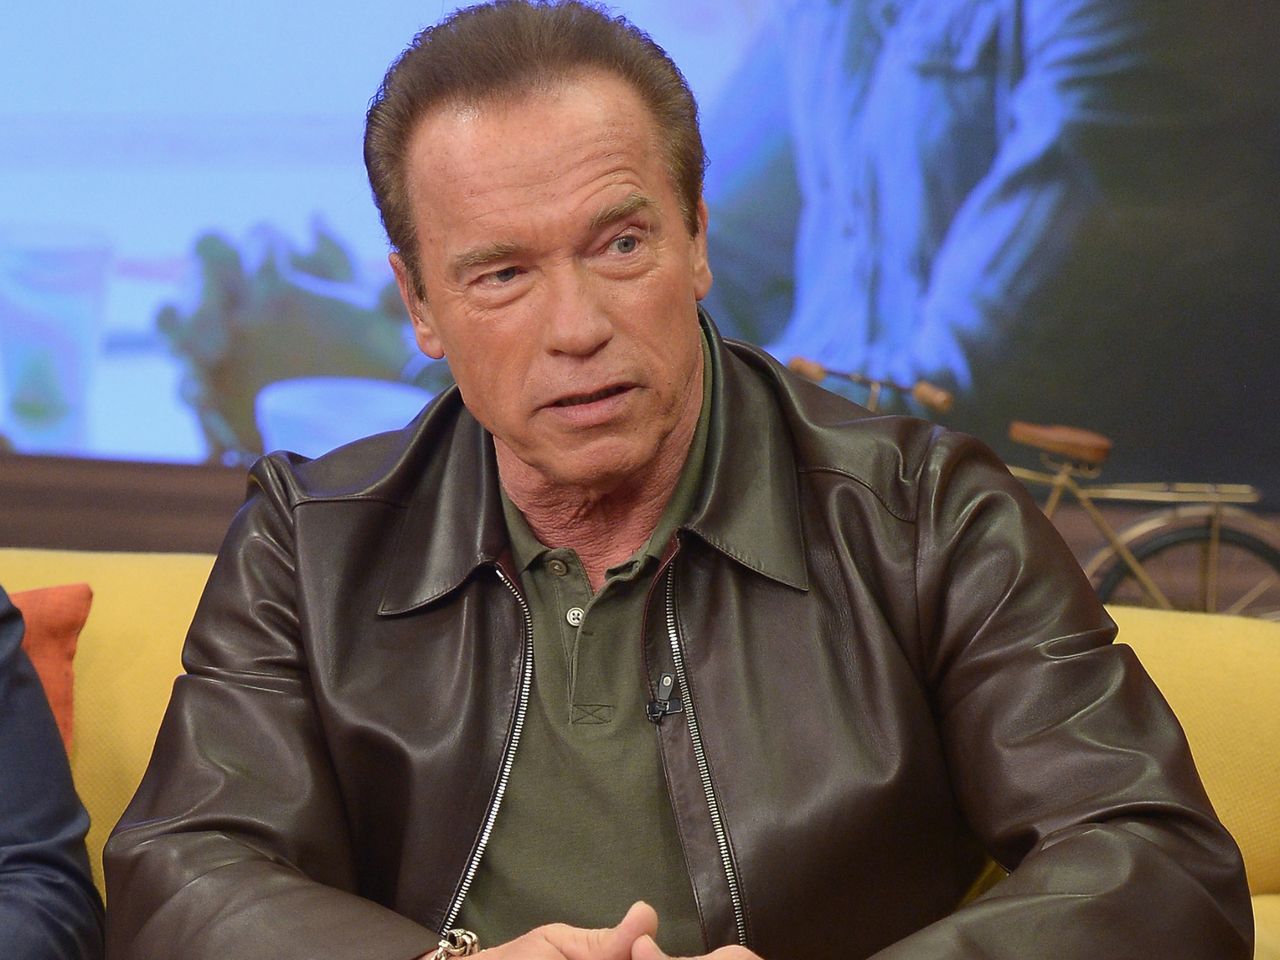 Arnold Schwarzenegger latami ukrywał, że ma nieślubnego syna